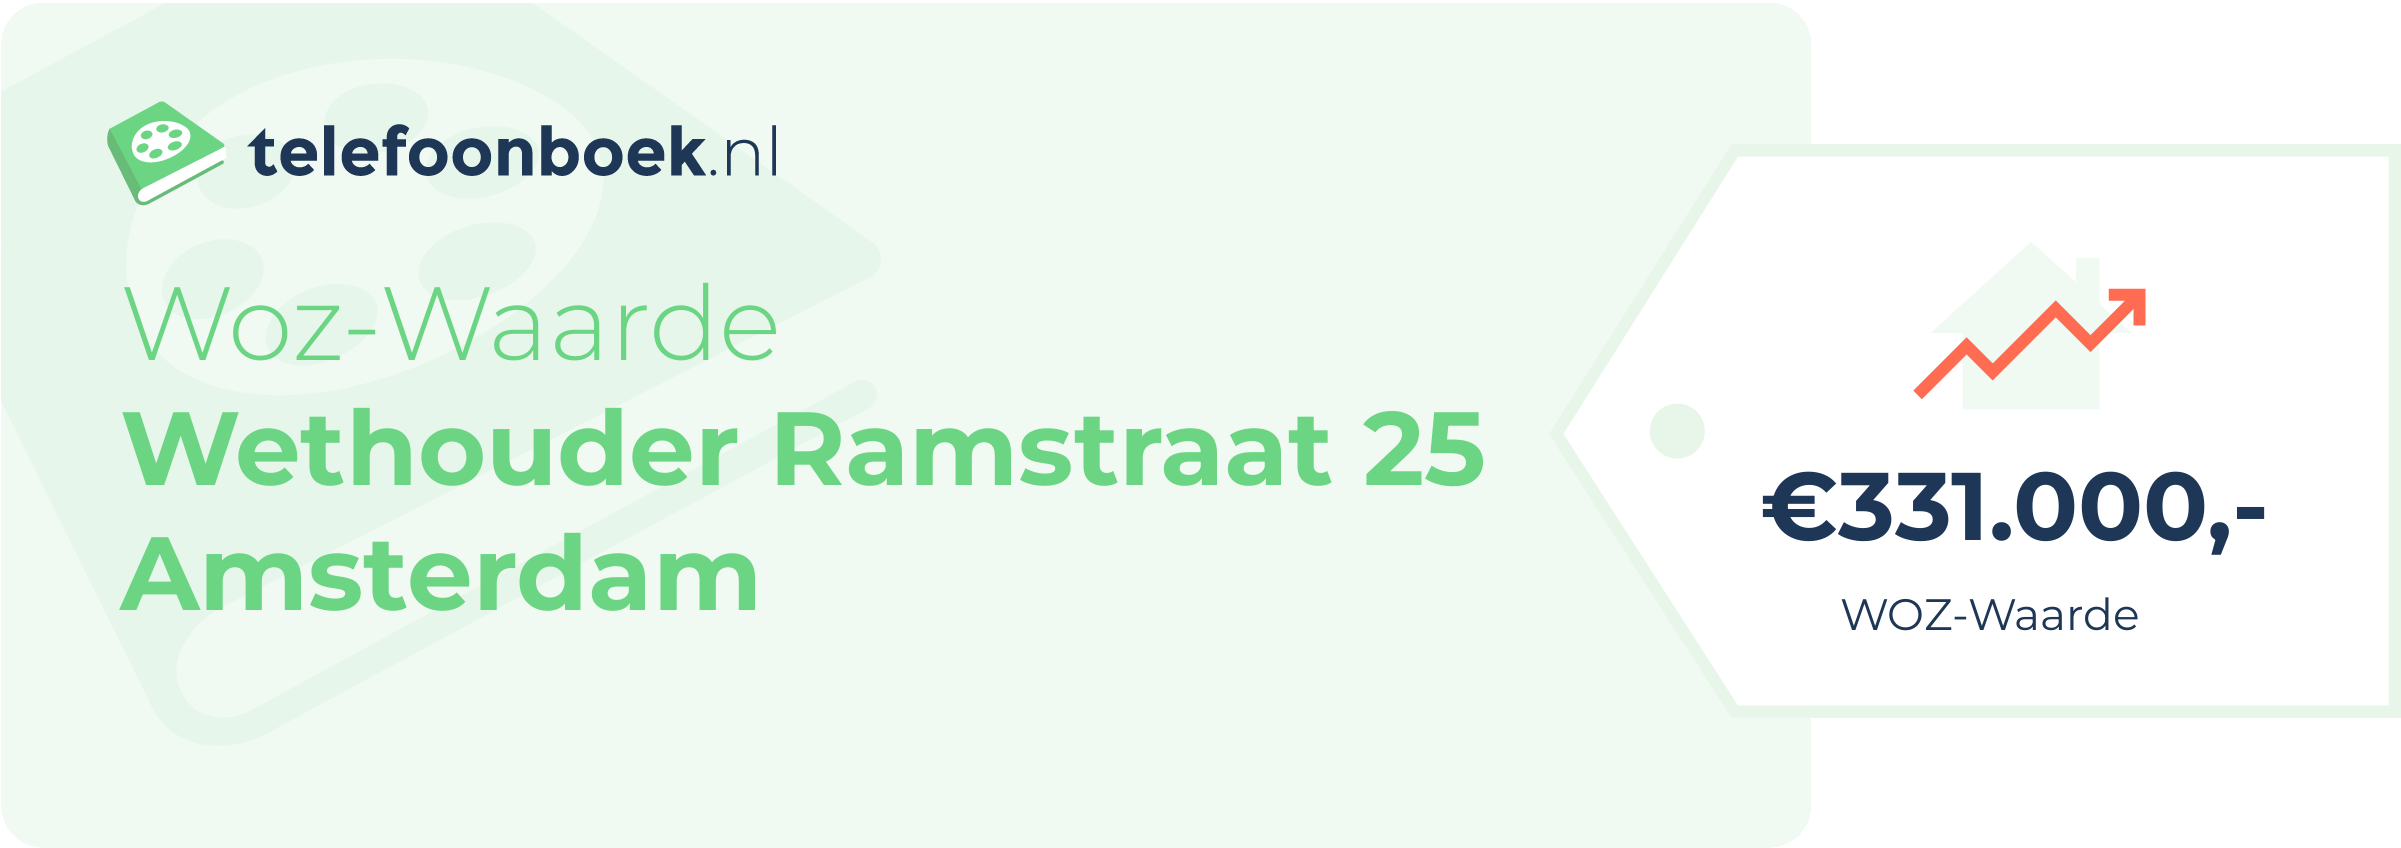 WOZ-waarde Wethouder Ramstraat 25 Amsterdam